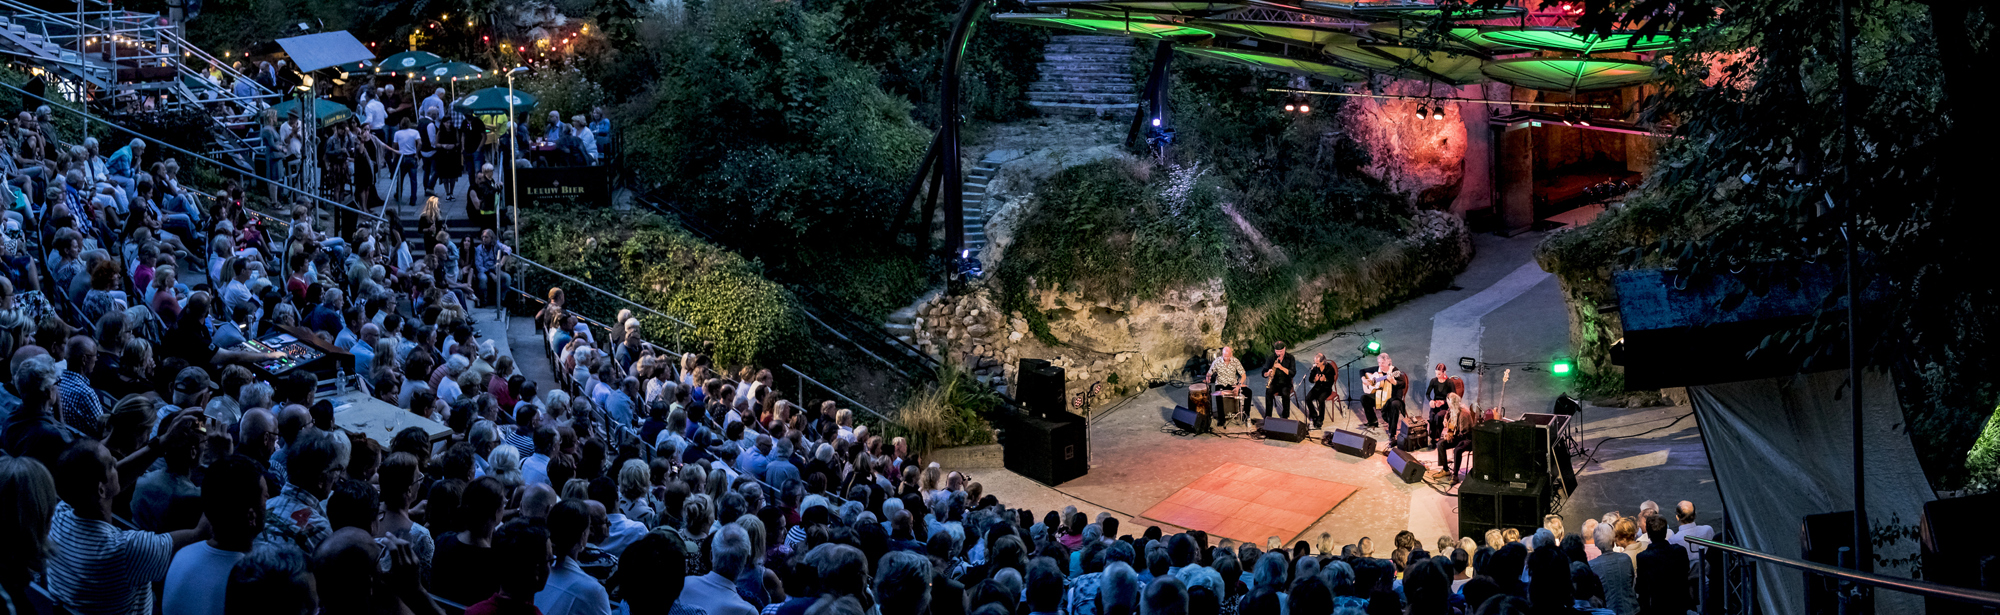 Openluchttheater Valkenburg in Sprookjesachtige Sfeer tijdens een concert in het donker